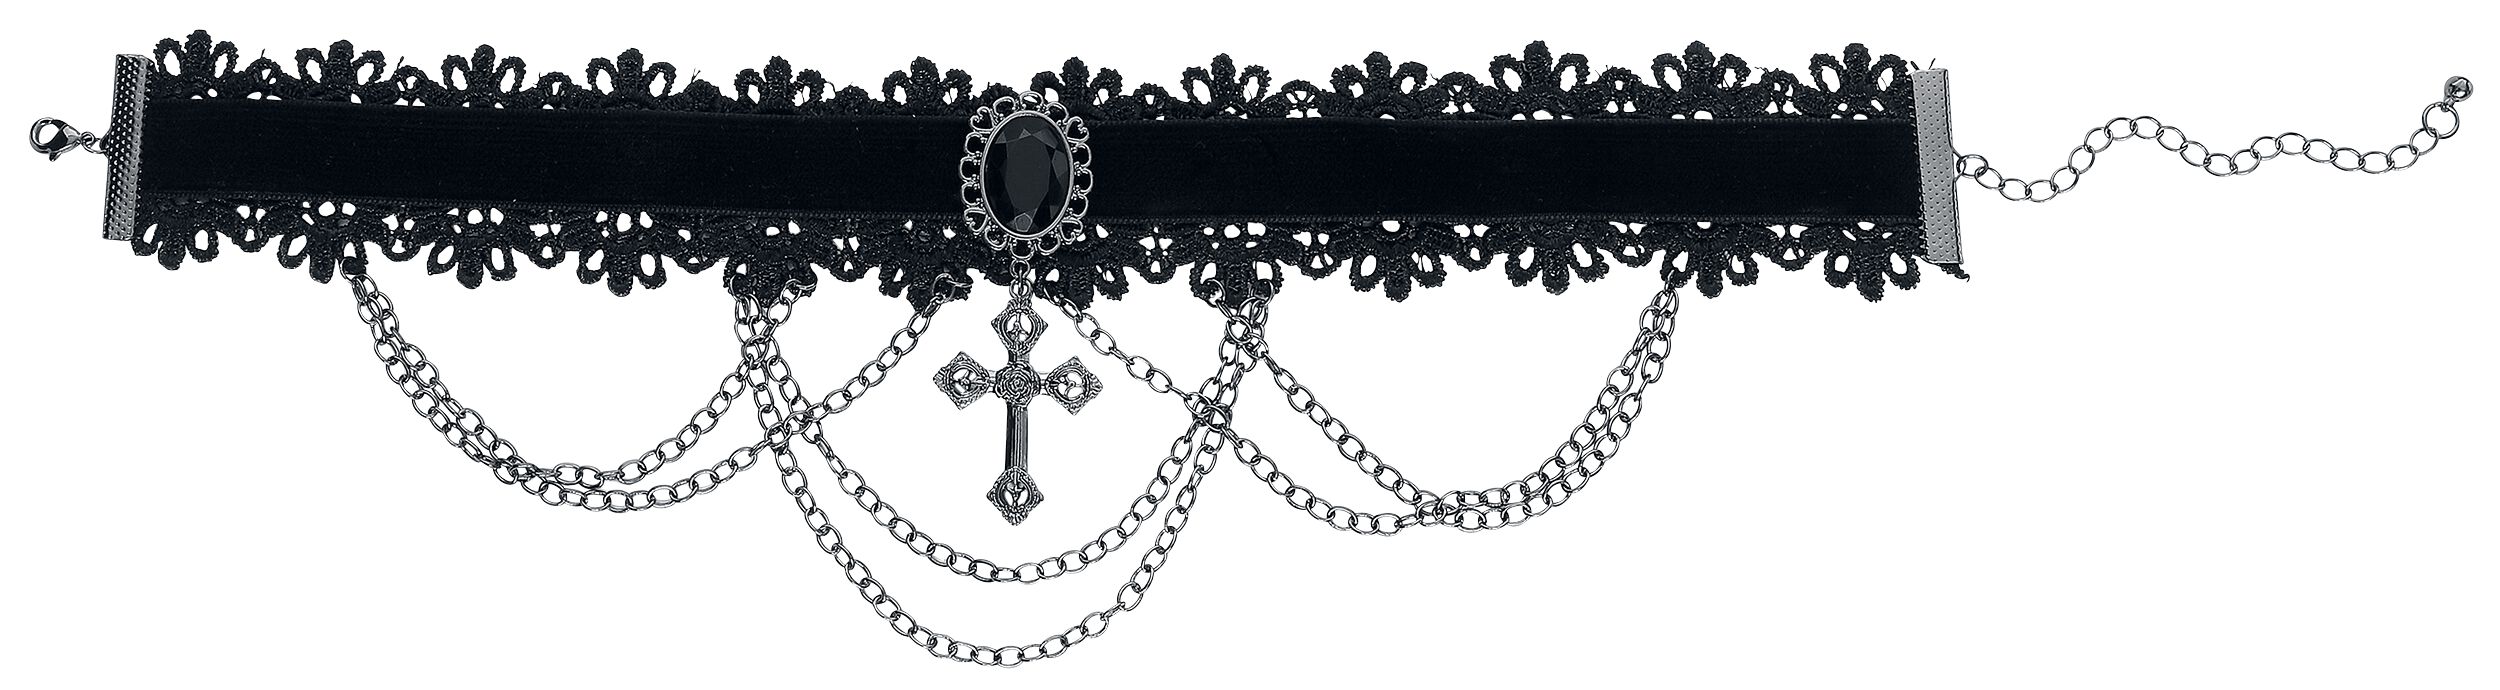 Serre-cou Gothic de Gothicana by EMP - Cross - pour Femme - noir